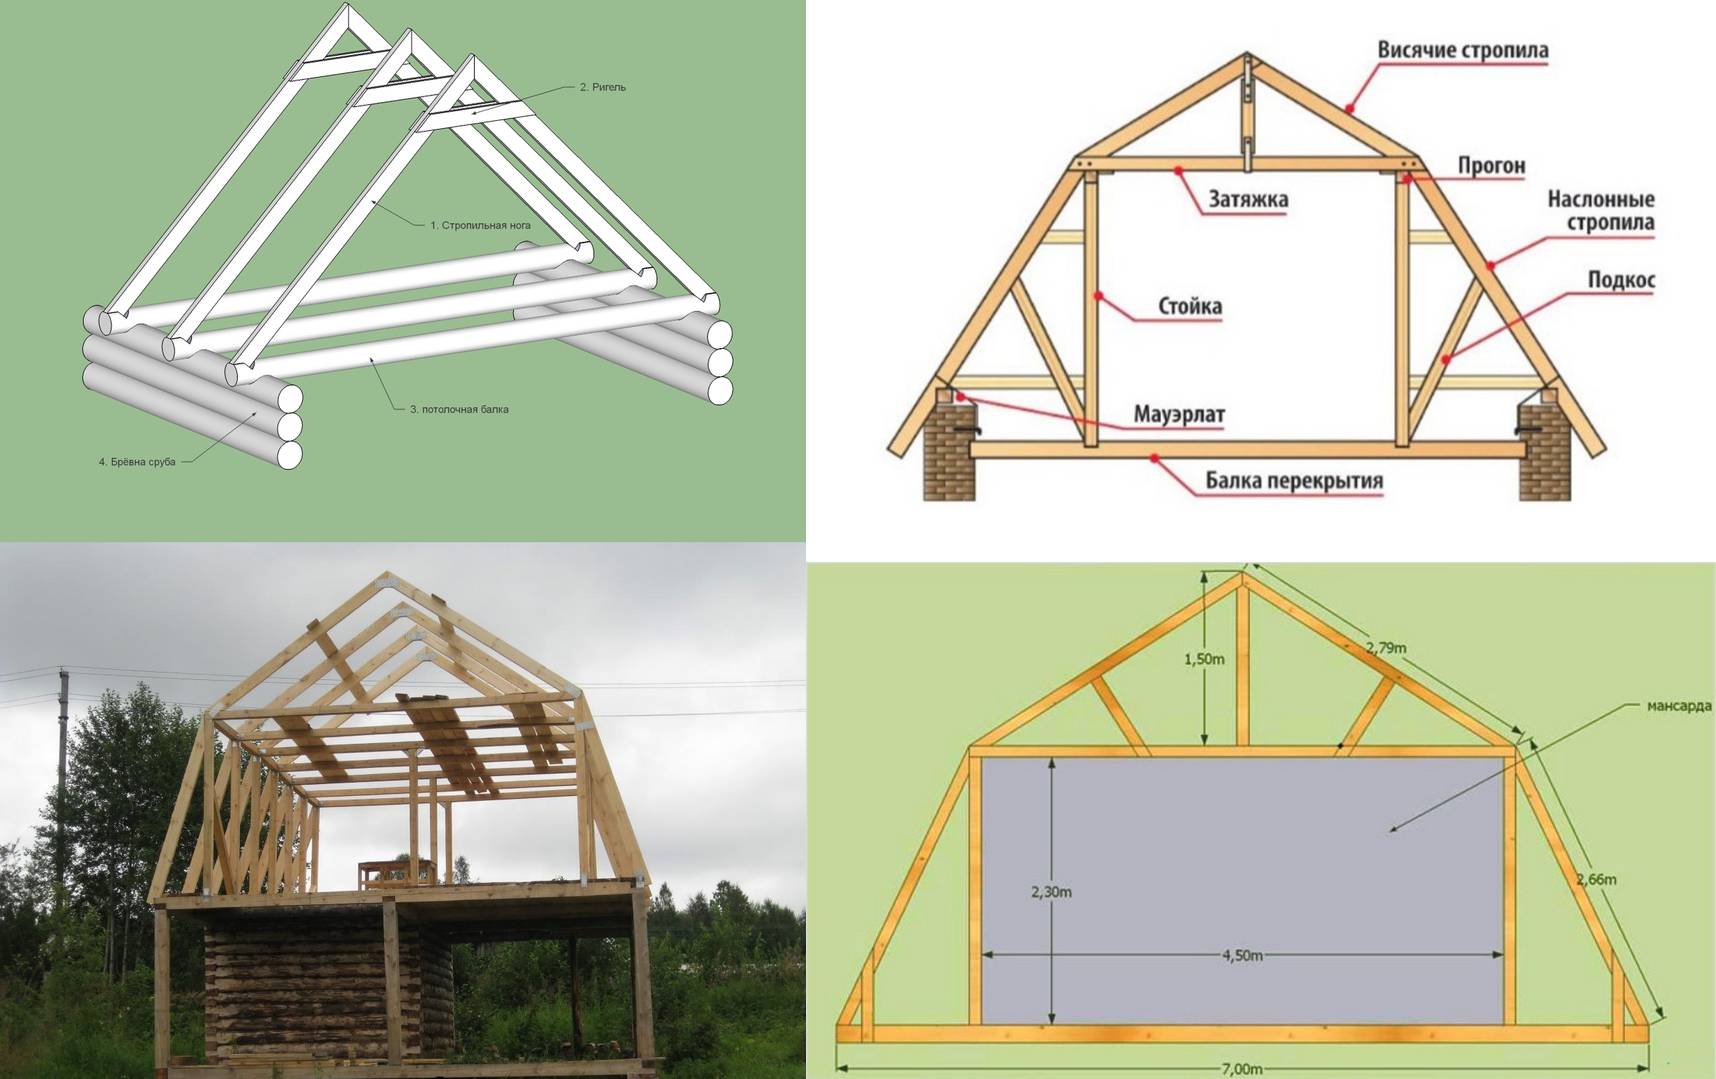 Четырехскатная крыша: плюсы, минусы применения и правила установки